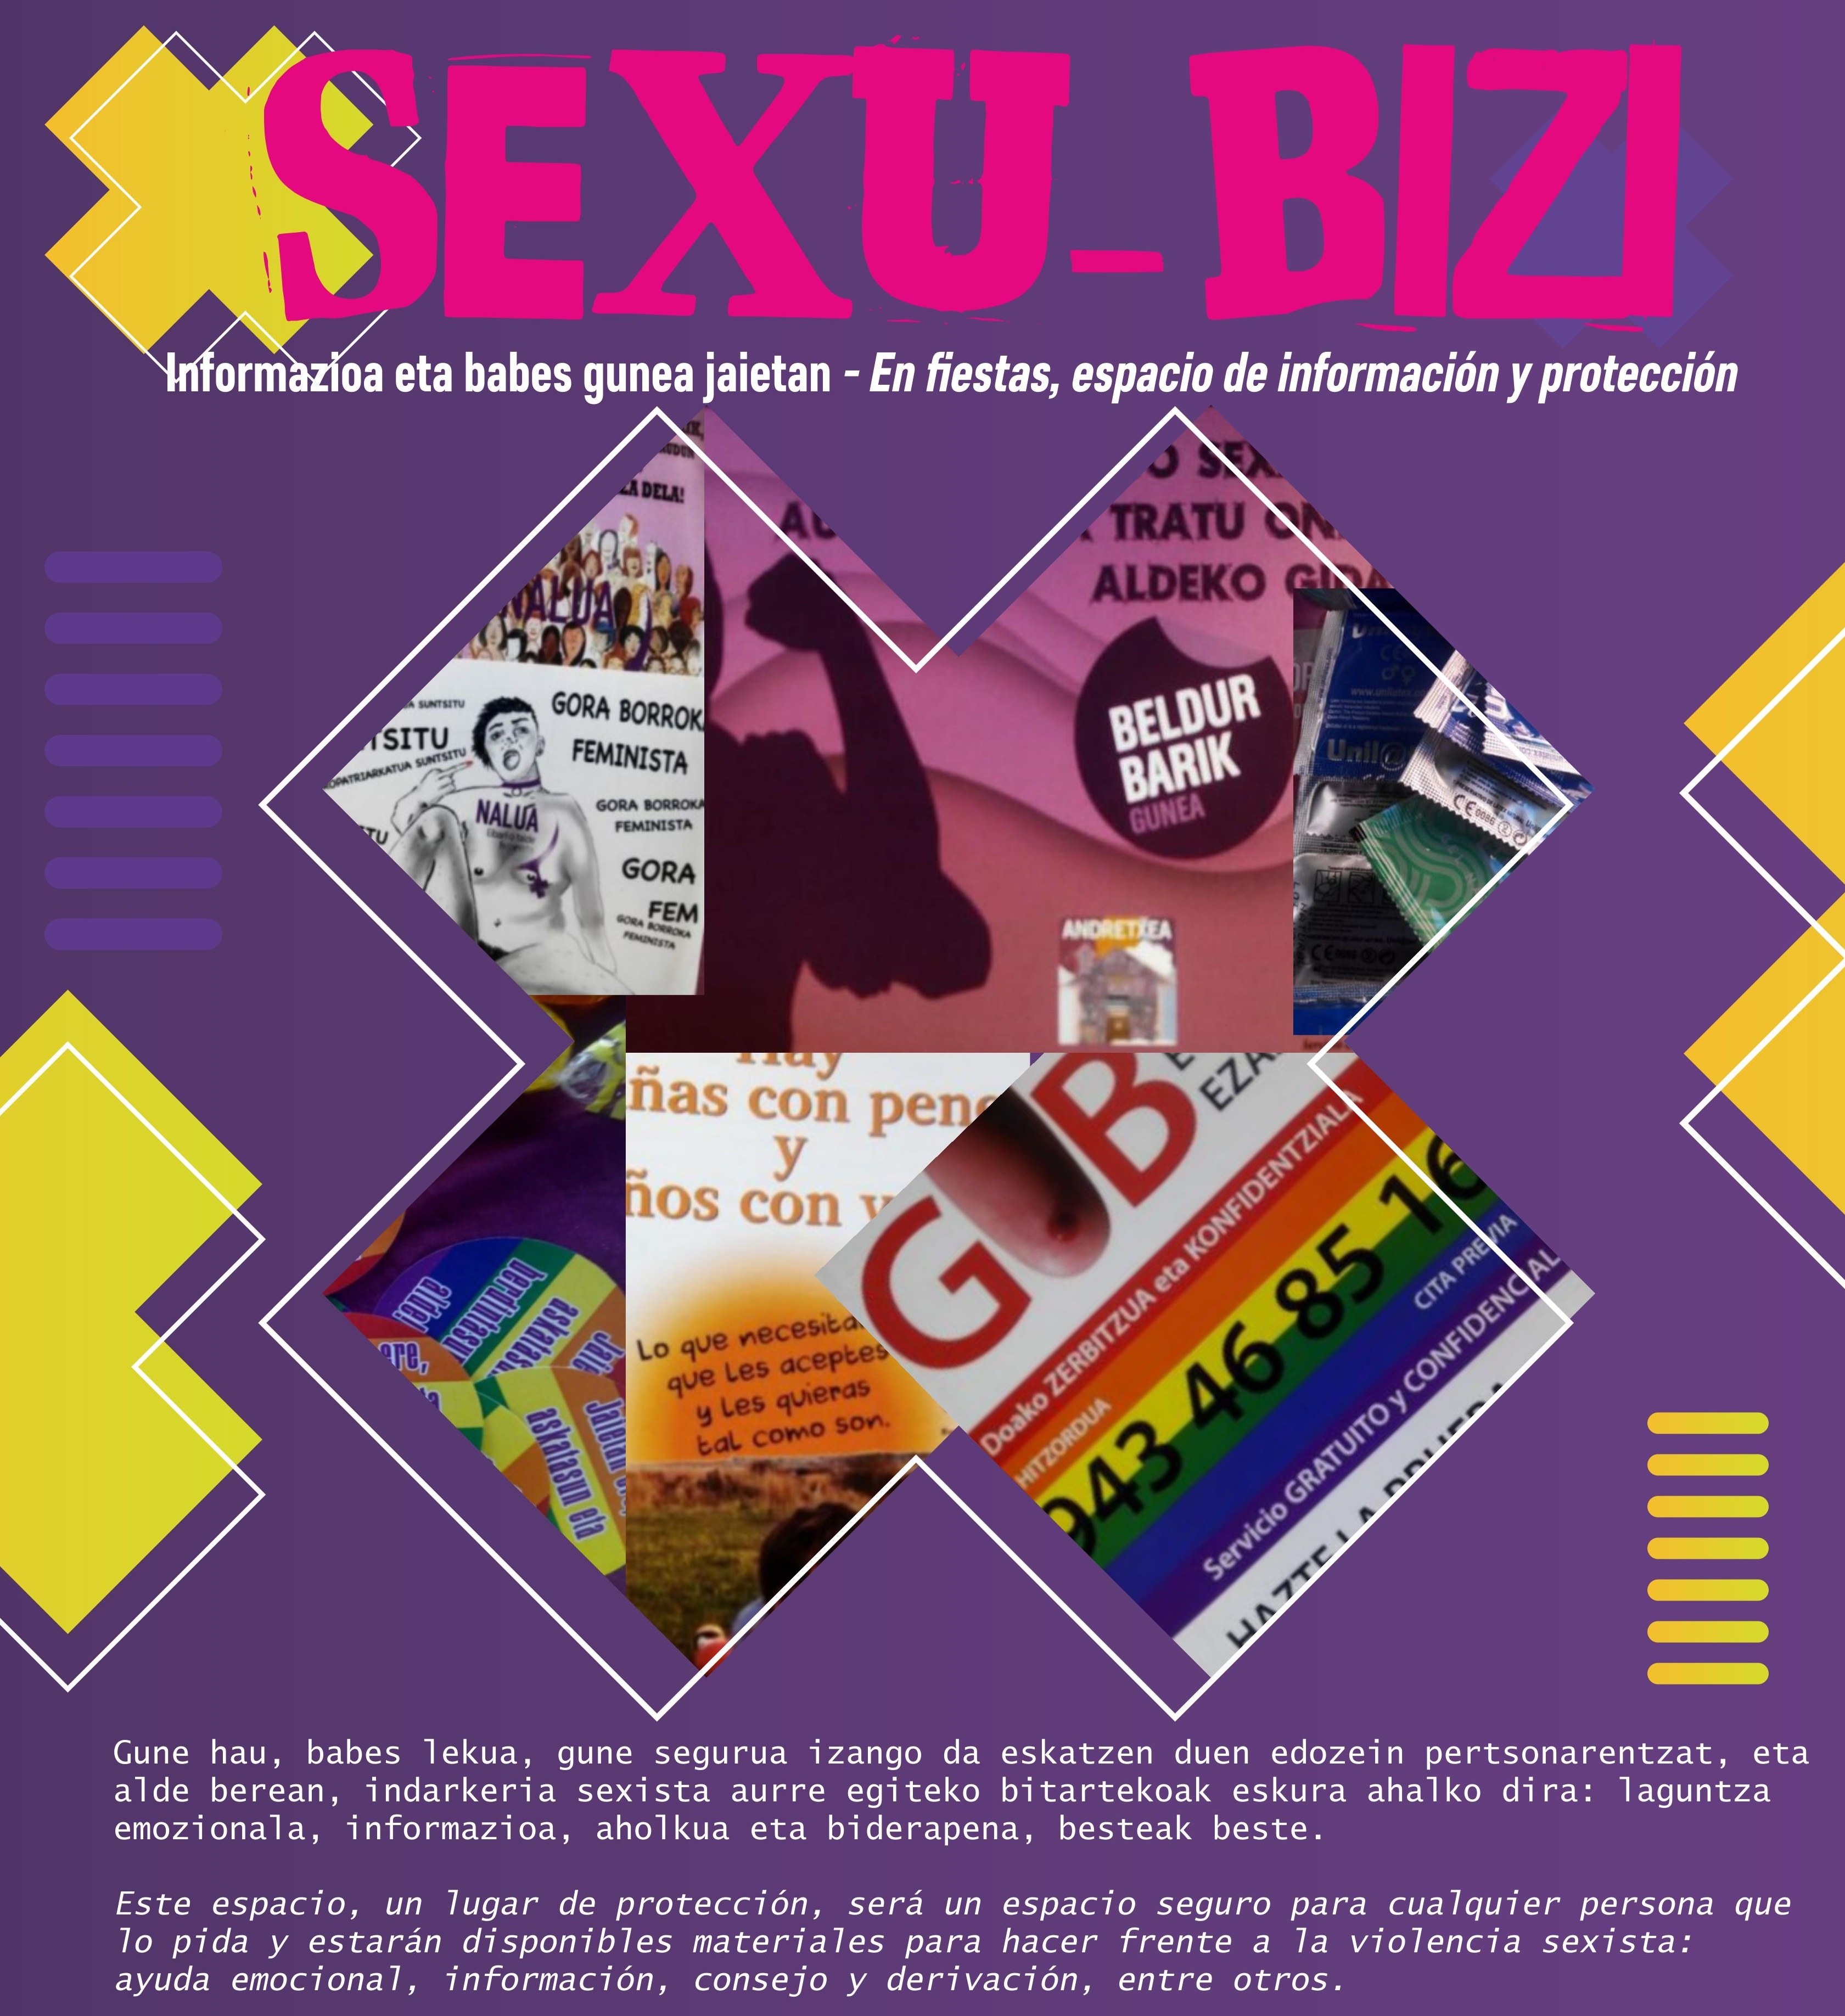 Sexu-Bizi: Informazioa eta babes gunea San Andres jaietan